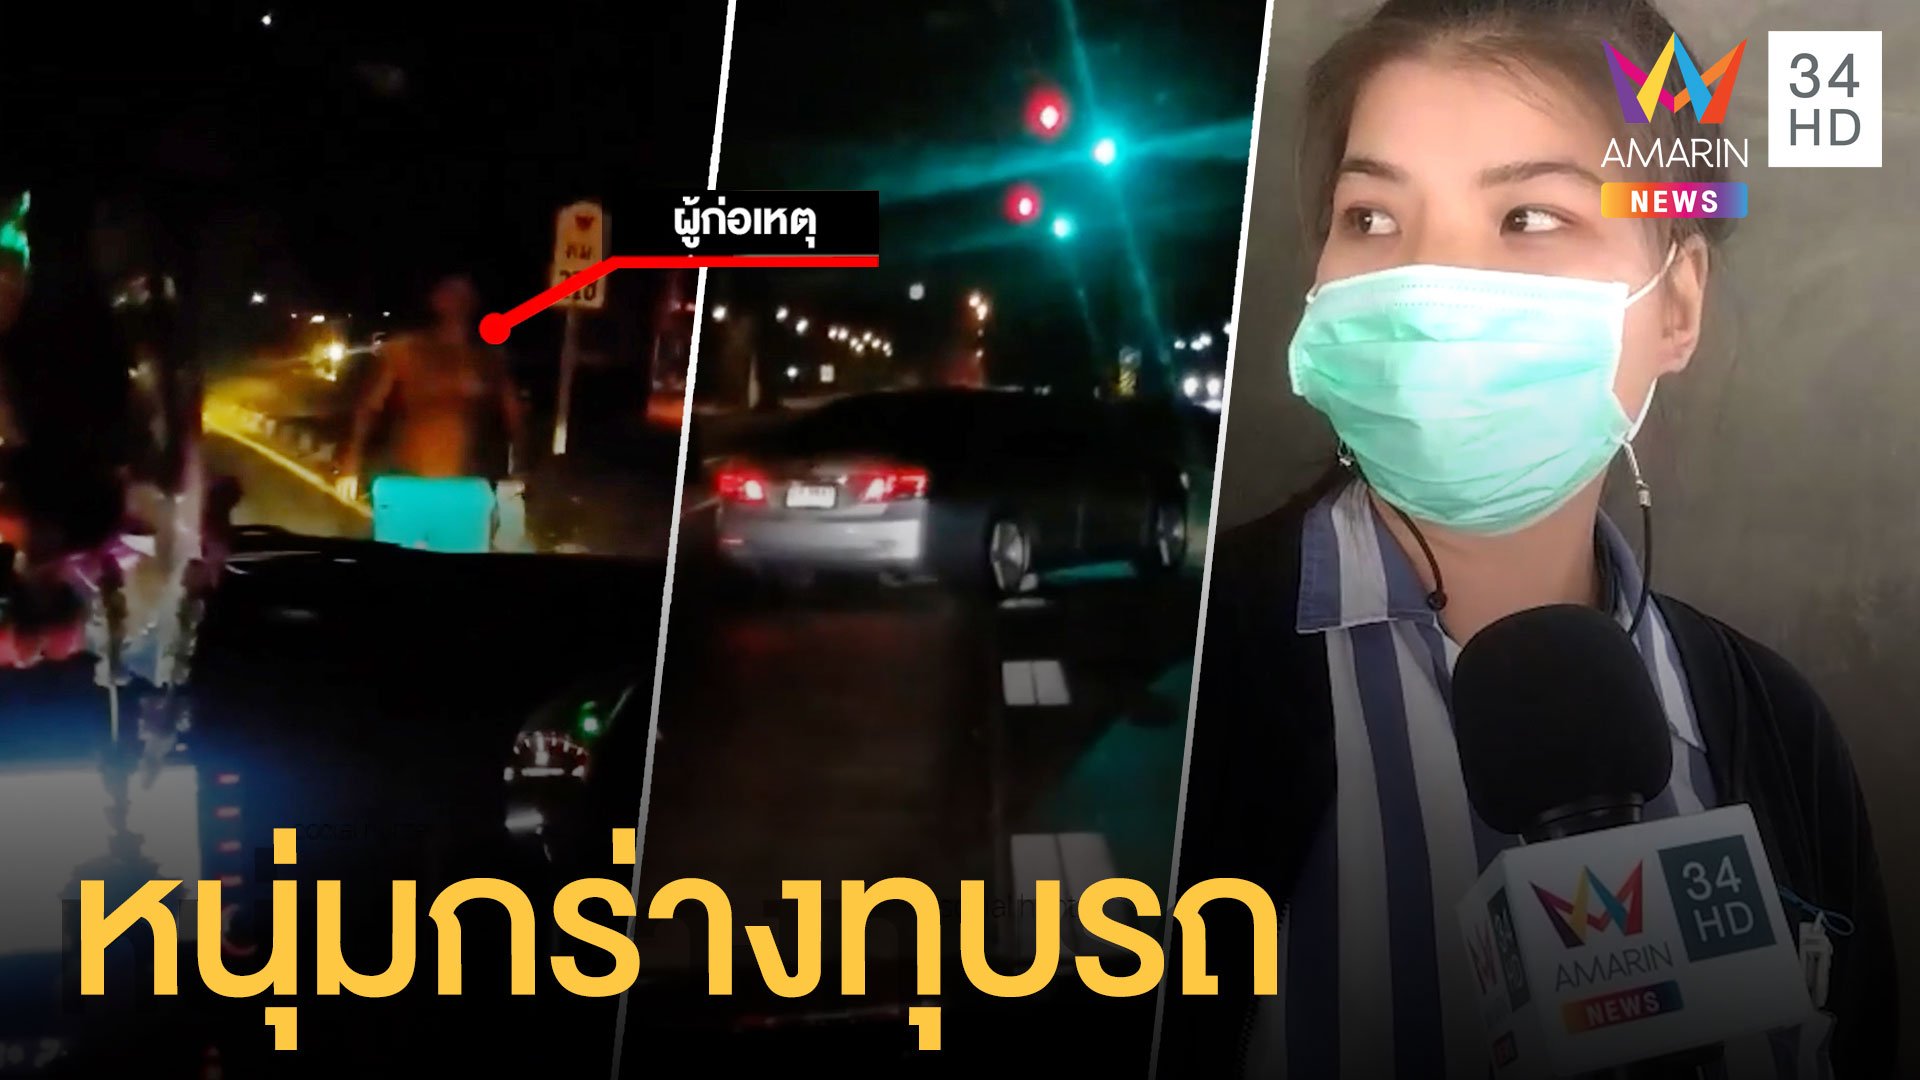 สาวผู้เสียหายเล่านาทีหนุ่มกร่าง ถอดเสื้อทุบรถกลางถนน | ข่าวเที่ยงอมรินทร์ | 15 ก.พ. 64 | AMARIN TVHD34